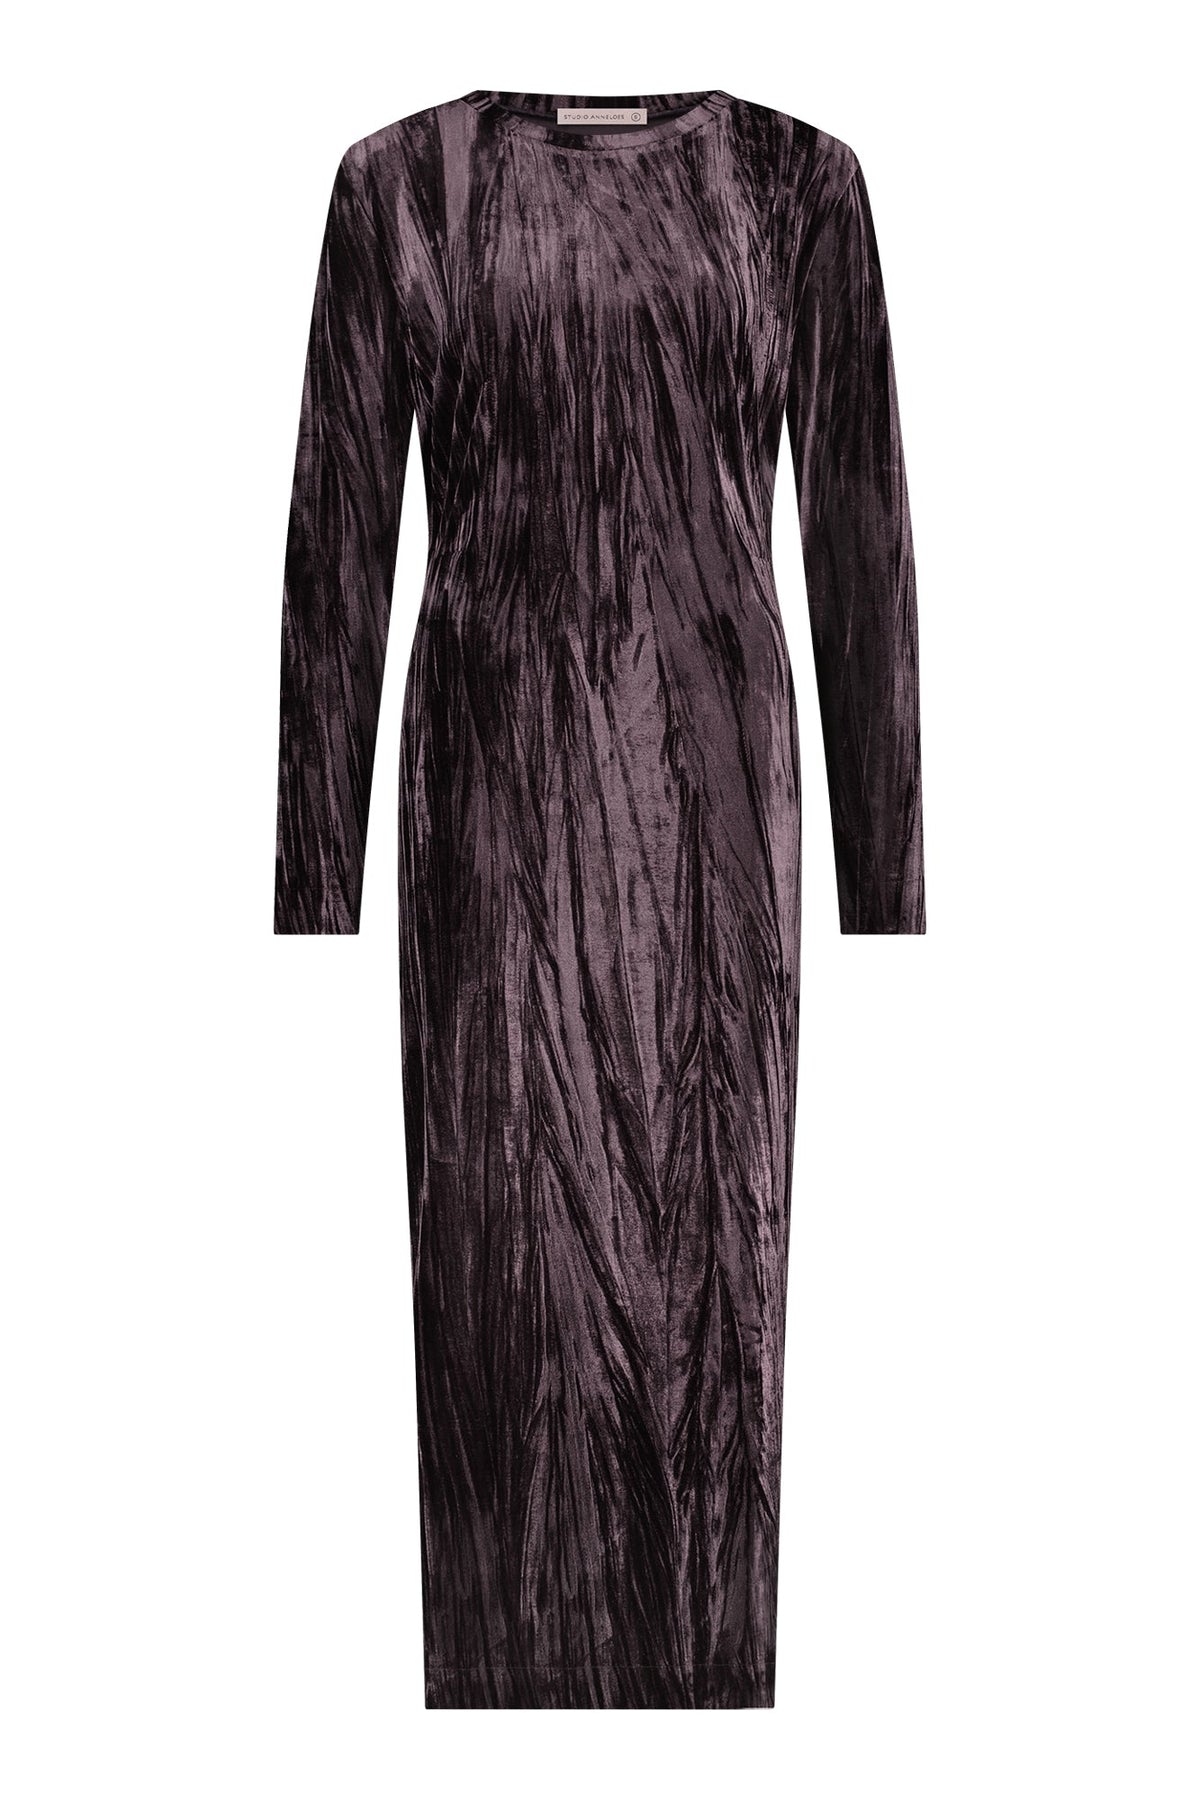 Paarse jurk Tammy velvet - Capuchon Fashion